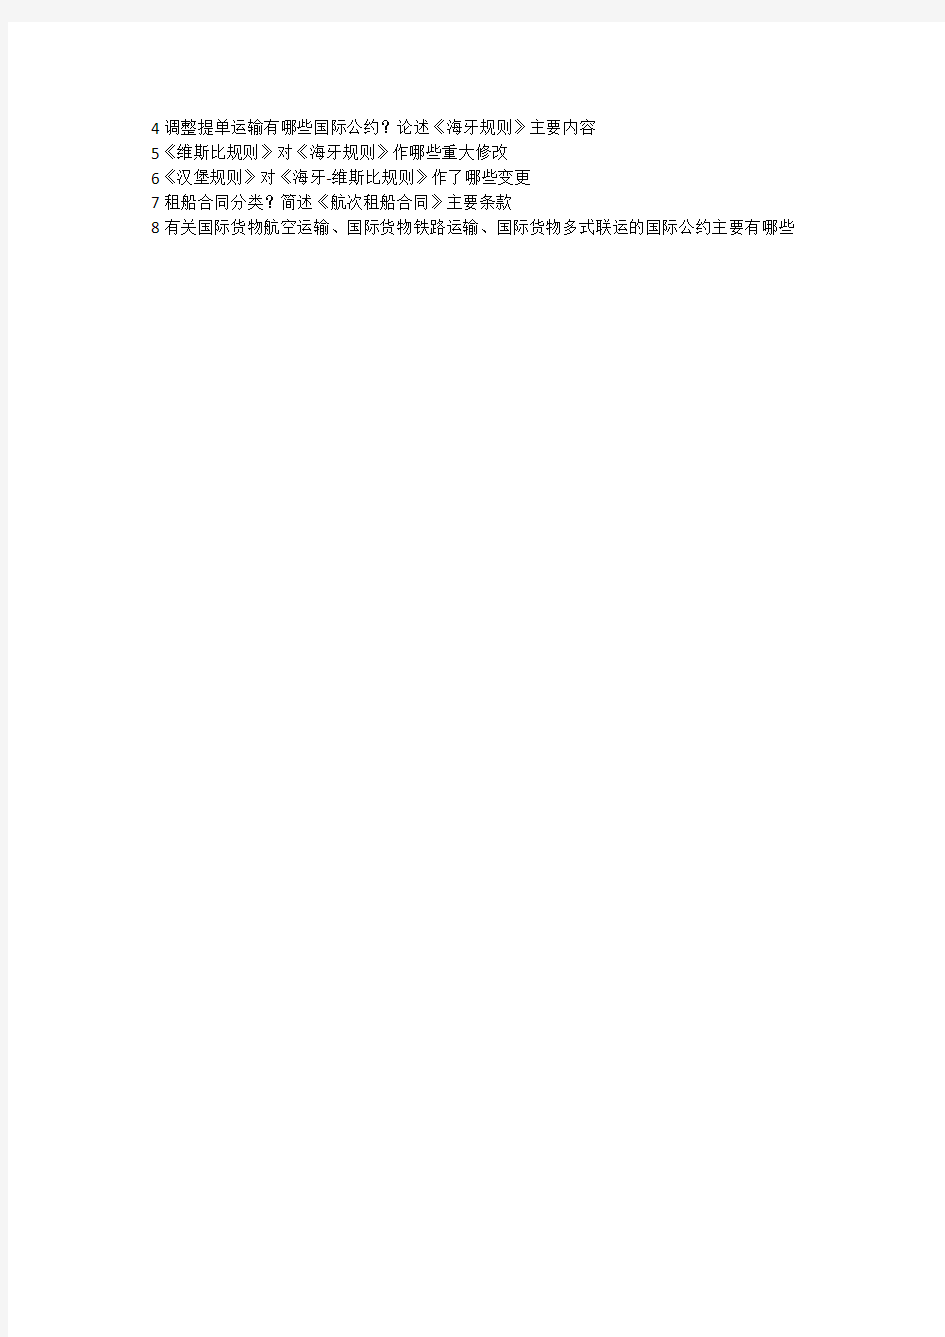 上海政法学院 国际经济法 考试大纲